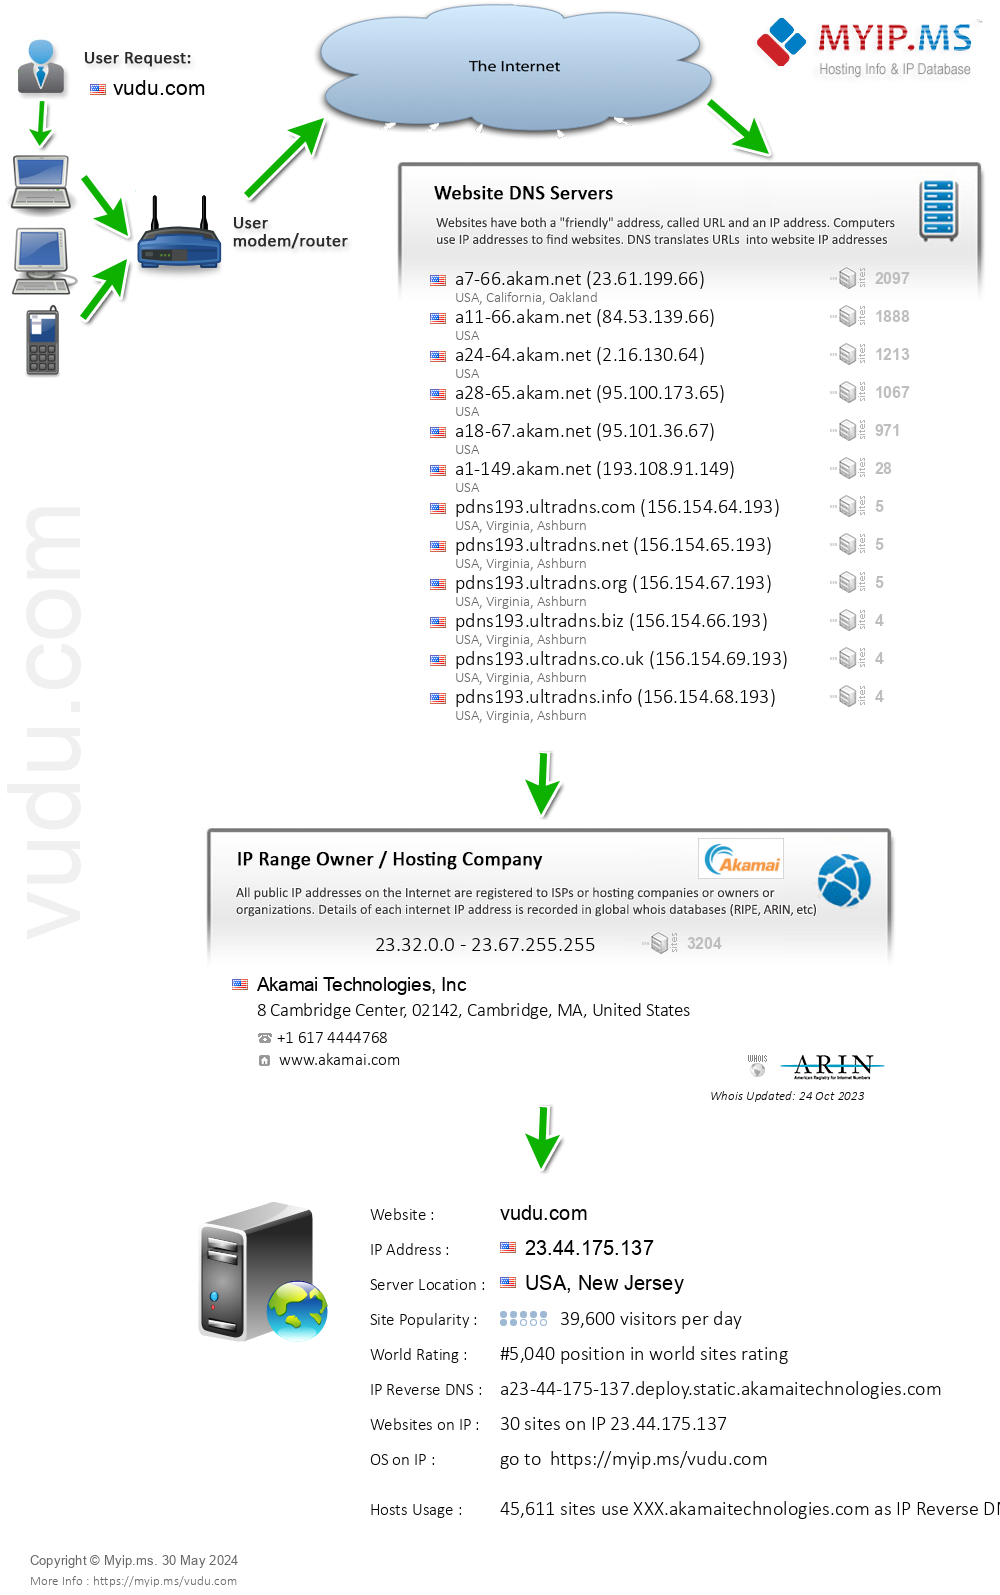 Vudu.com - Website Hosting Visual IP Diagram